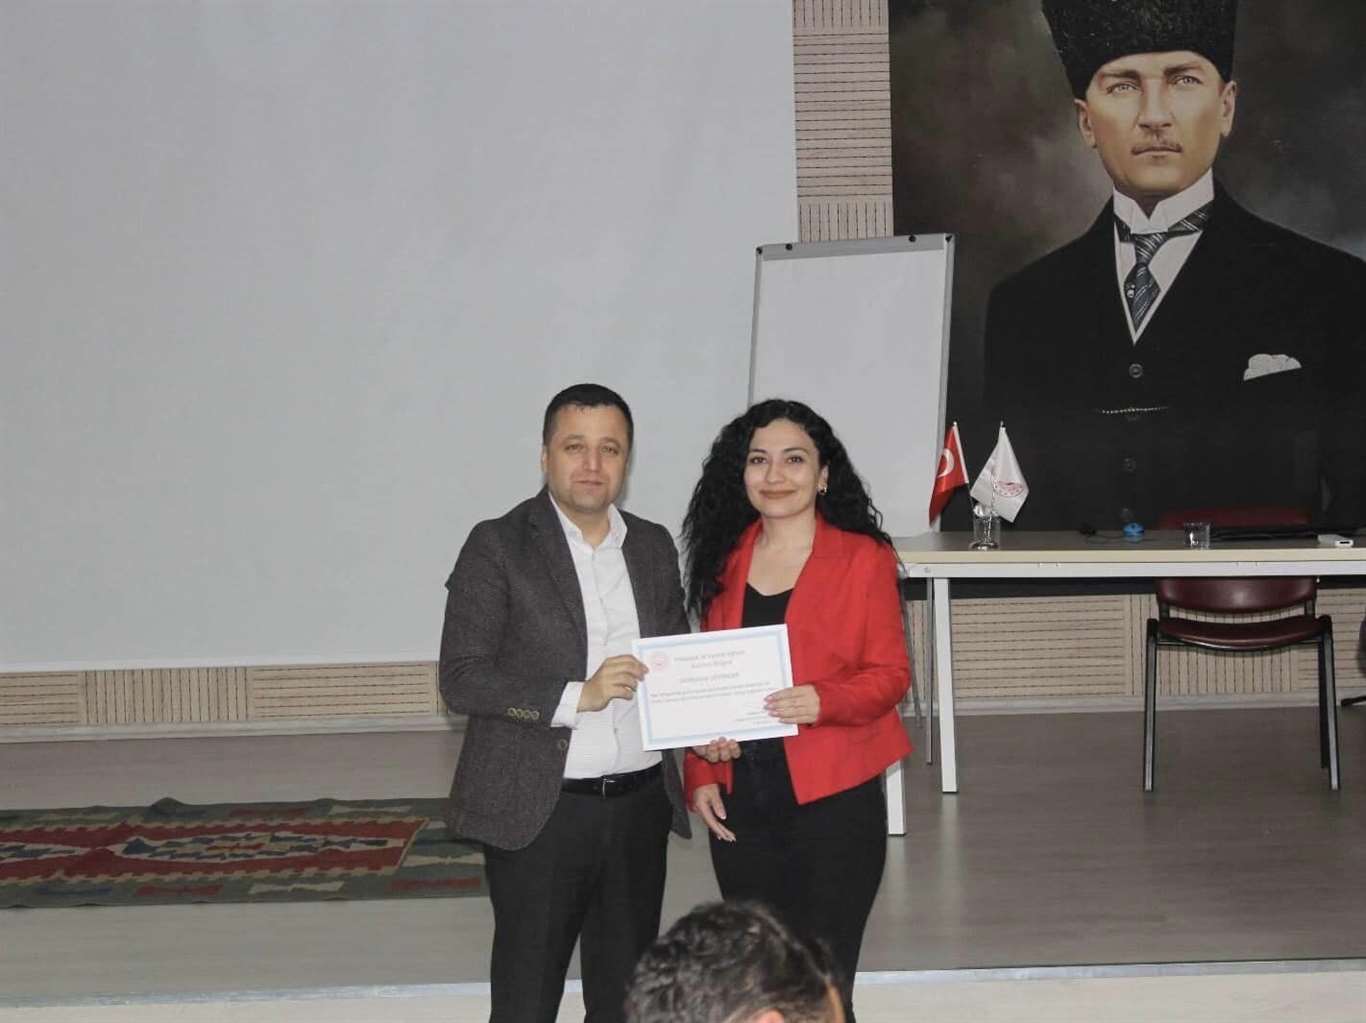       Muğla'da Aile ve Sosyal Hizmetler Müdürlüğü personeline ilkyardım eğitimi haberi